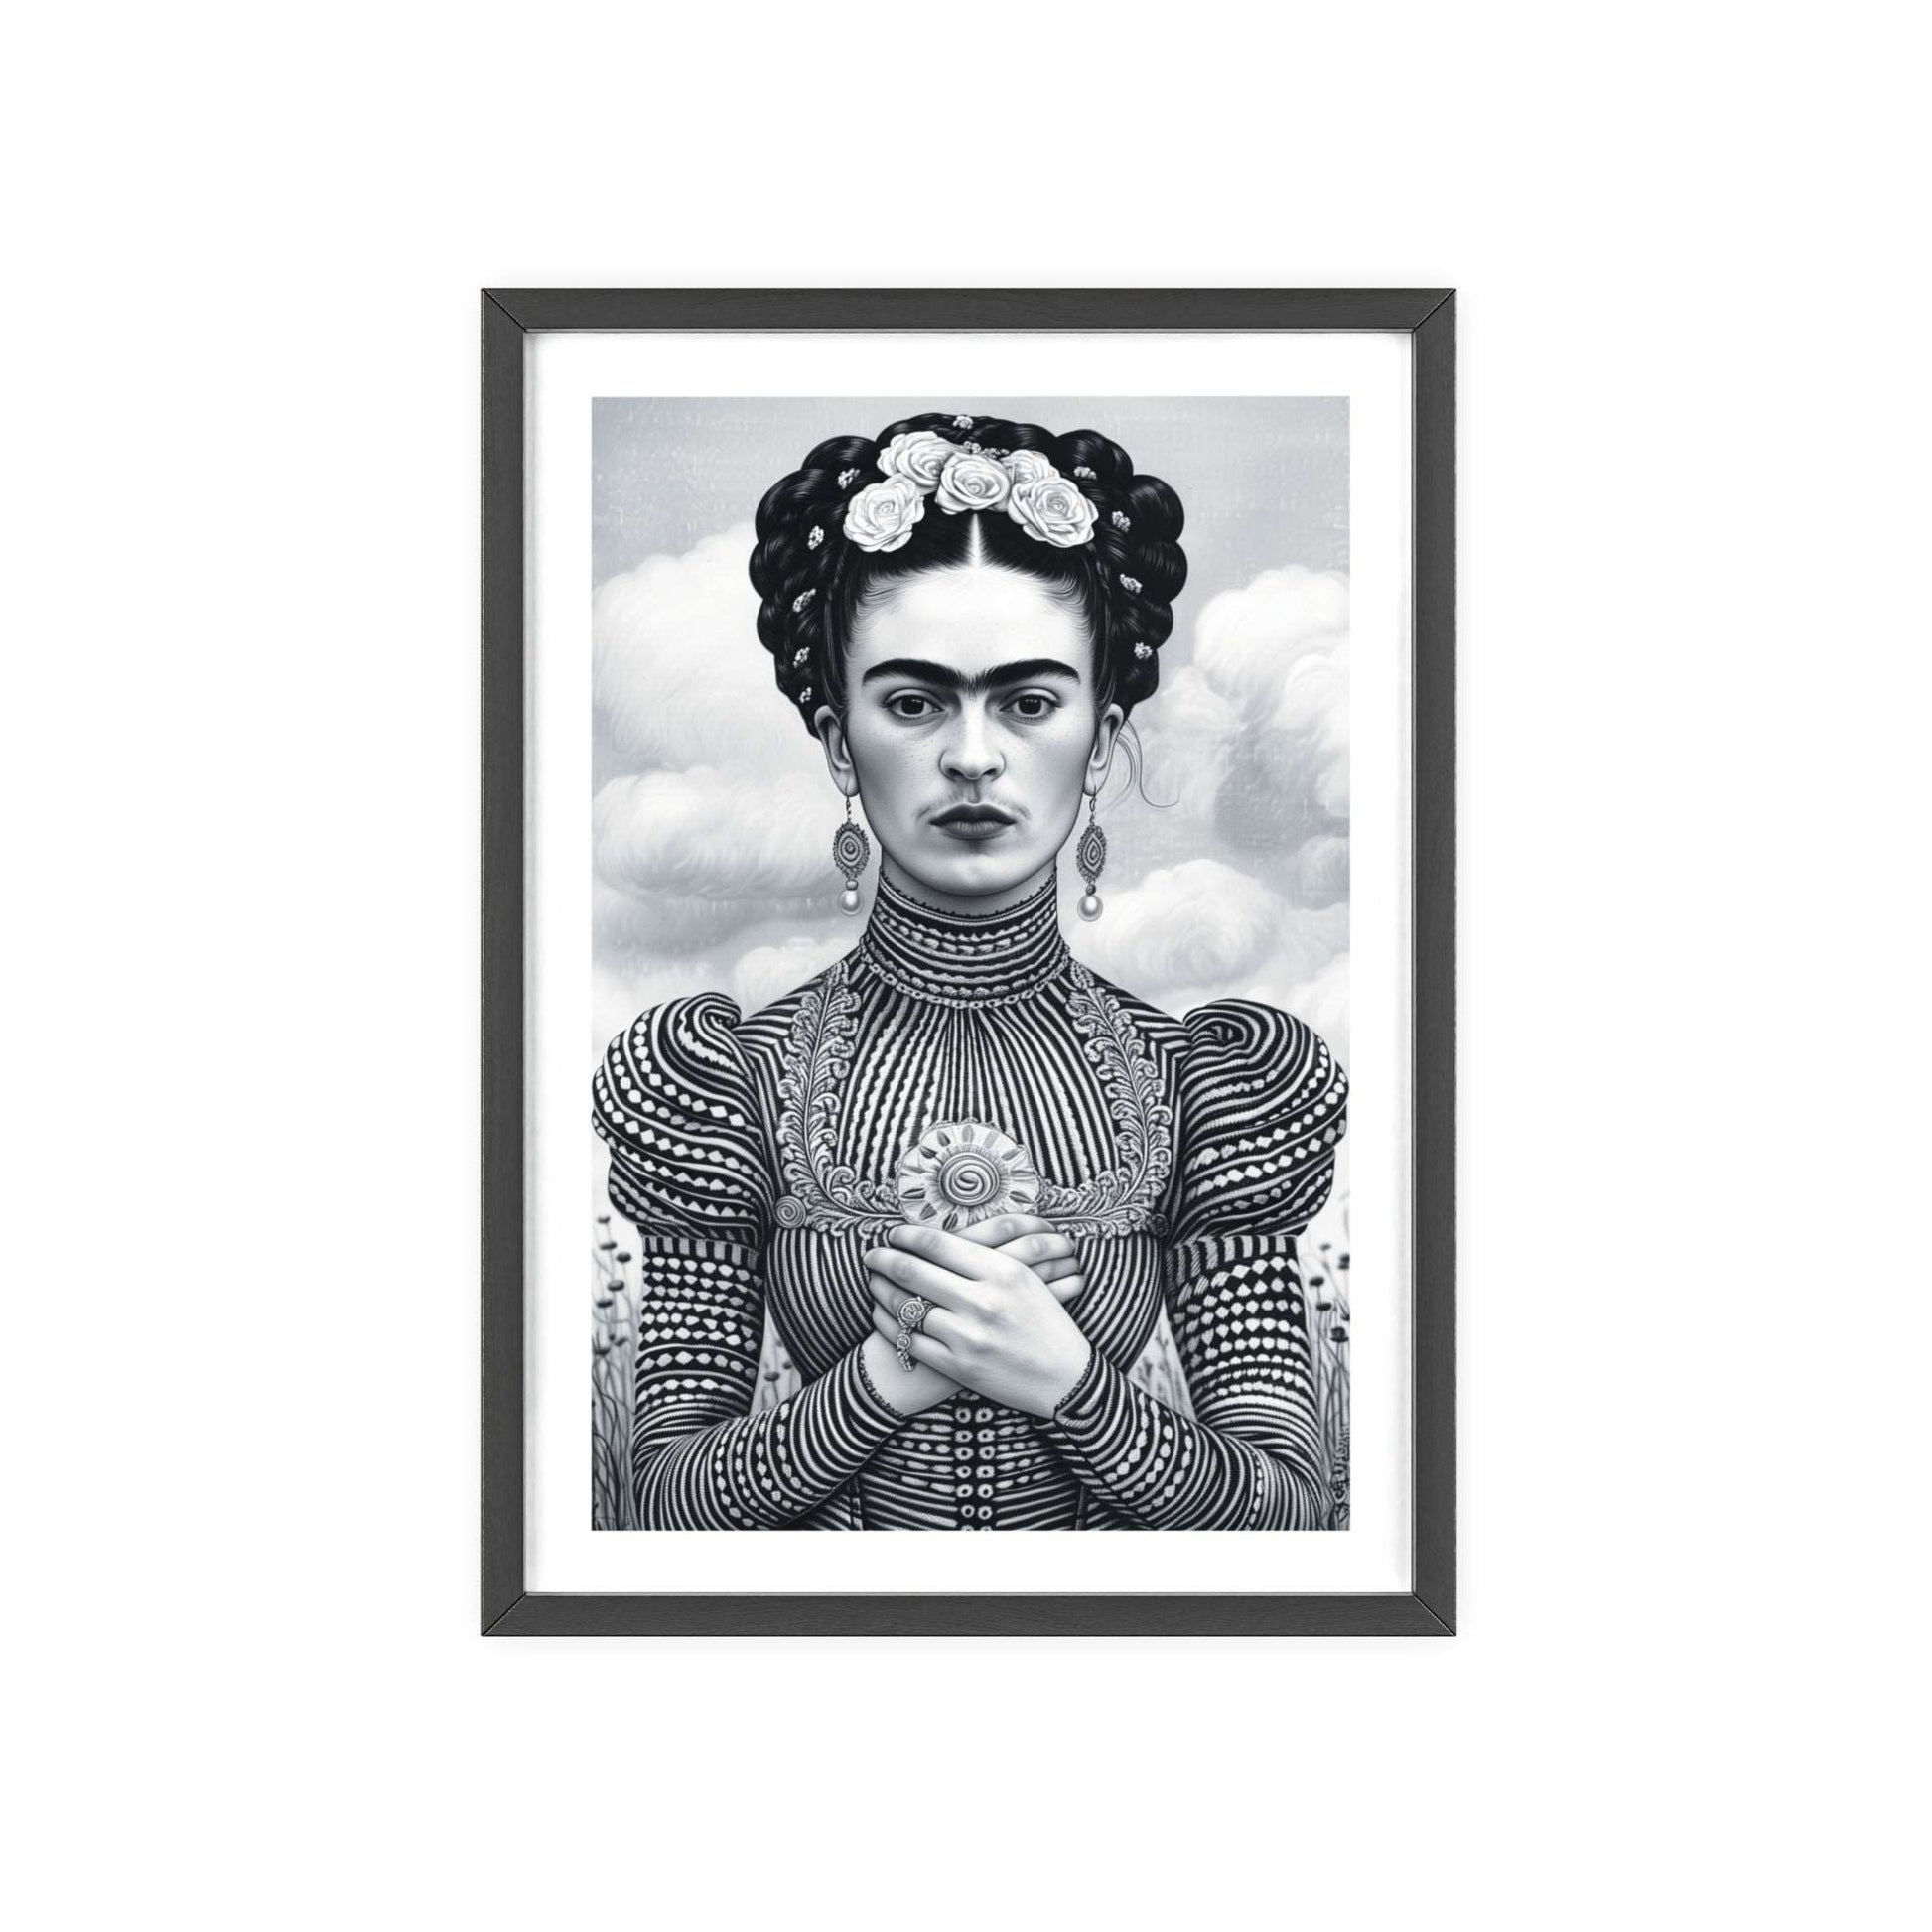  Frida Kahlo Black & White Wall Art! Modern home decor